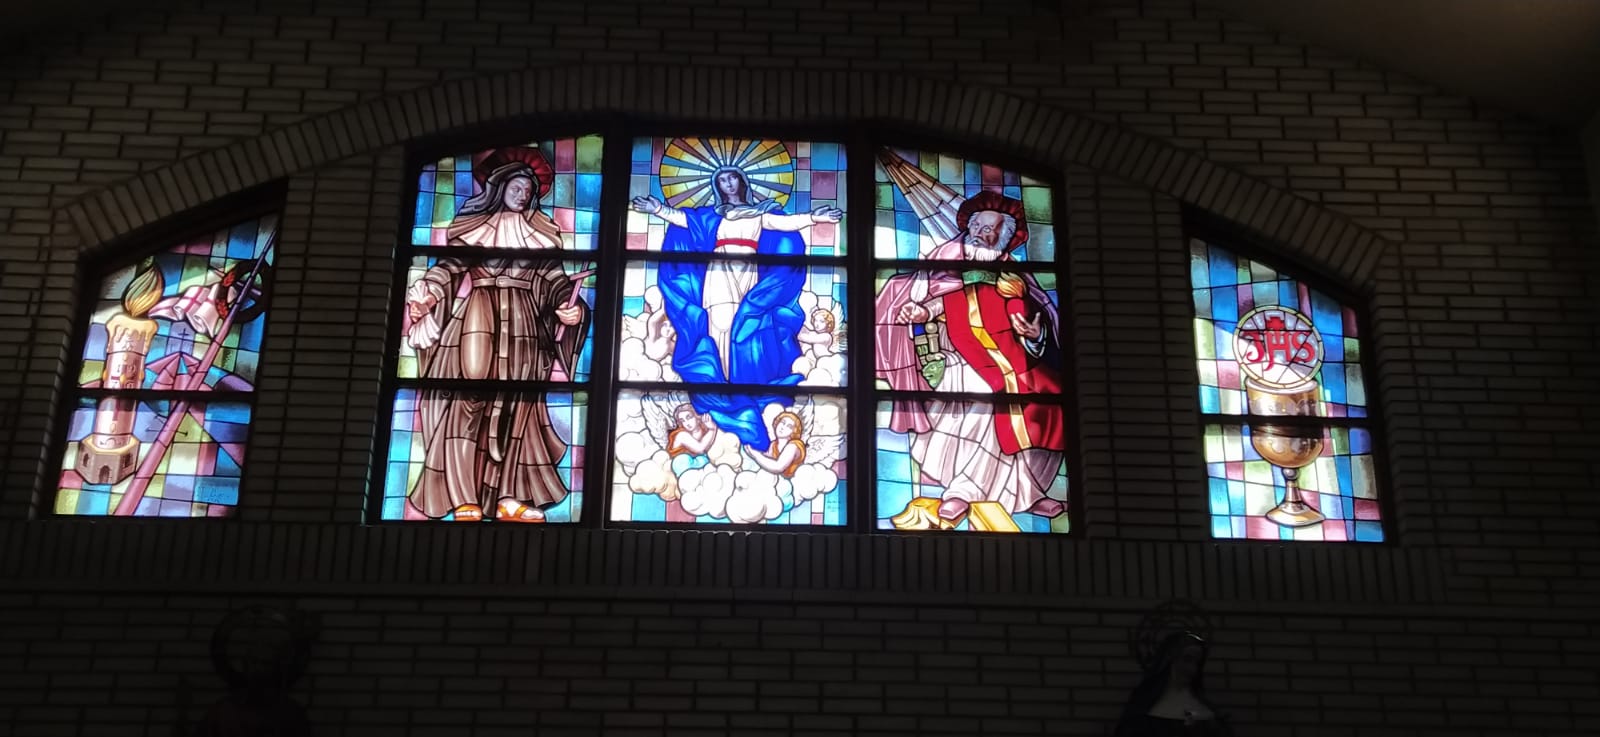 En el centro de la vidriera, encontramos la Asunción de María. Junto a ella, aparece la imagen de Santa Mónica y su hijo San Agustín. A ambos lados, vemos las alegorías de la Eucaristía y el Cirio Pascual.